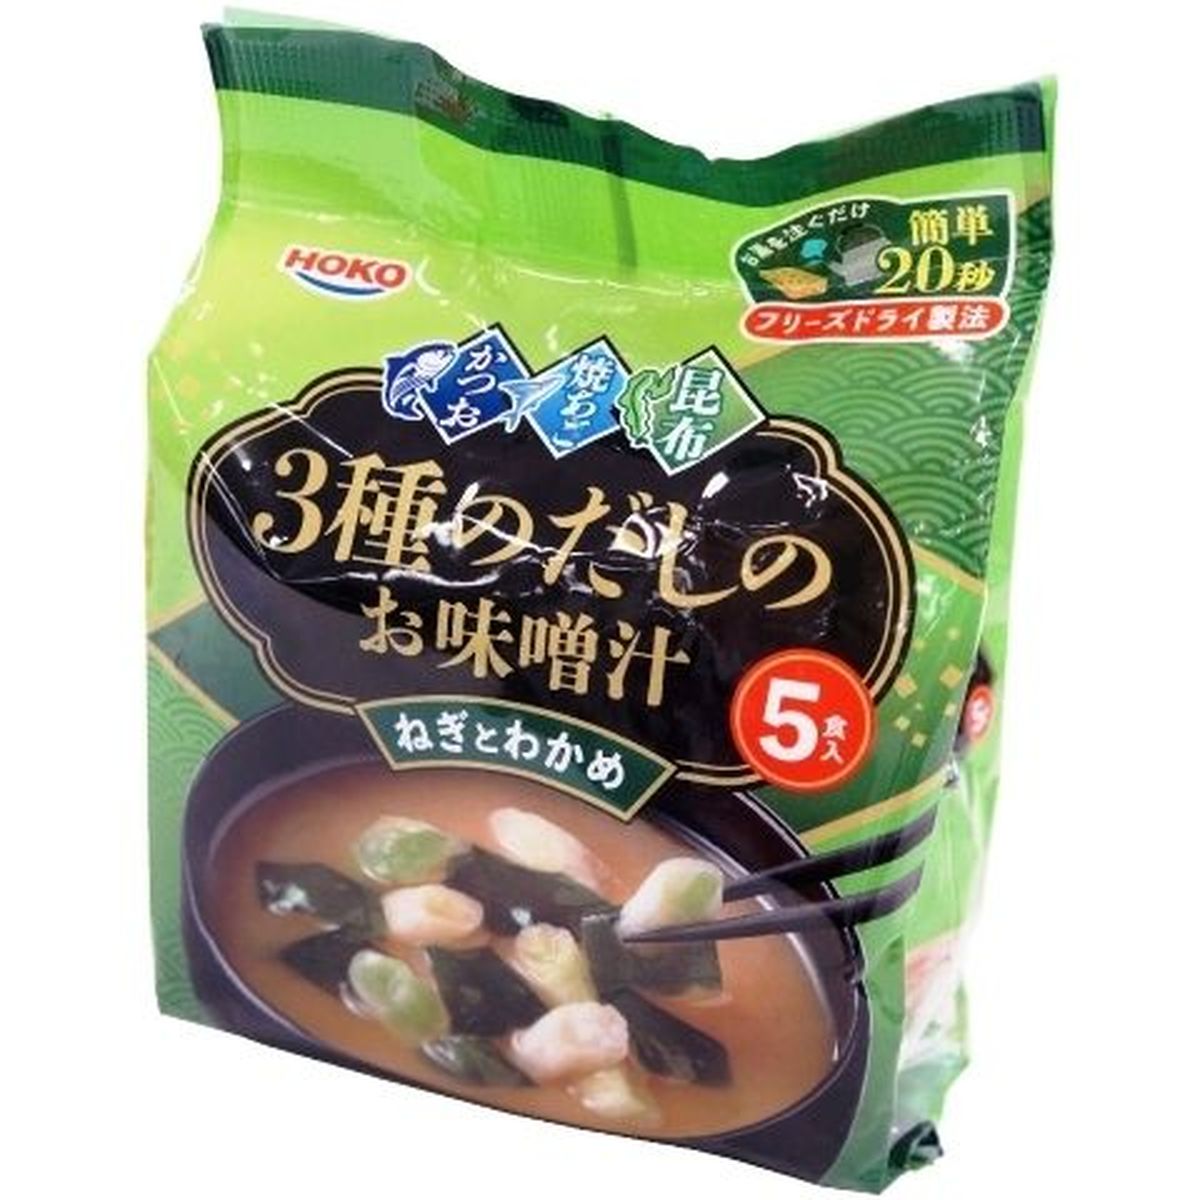 【10個入リ】宝幸 3種ダシノオ味噌汁 ネギトワカメ5食入リ 37.5g